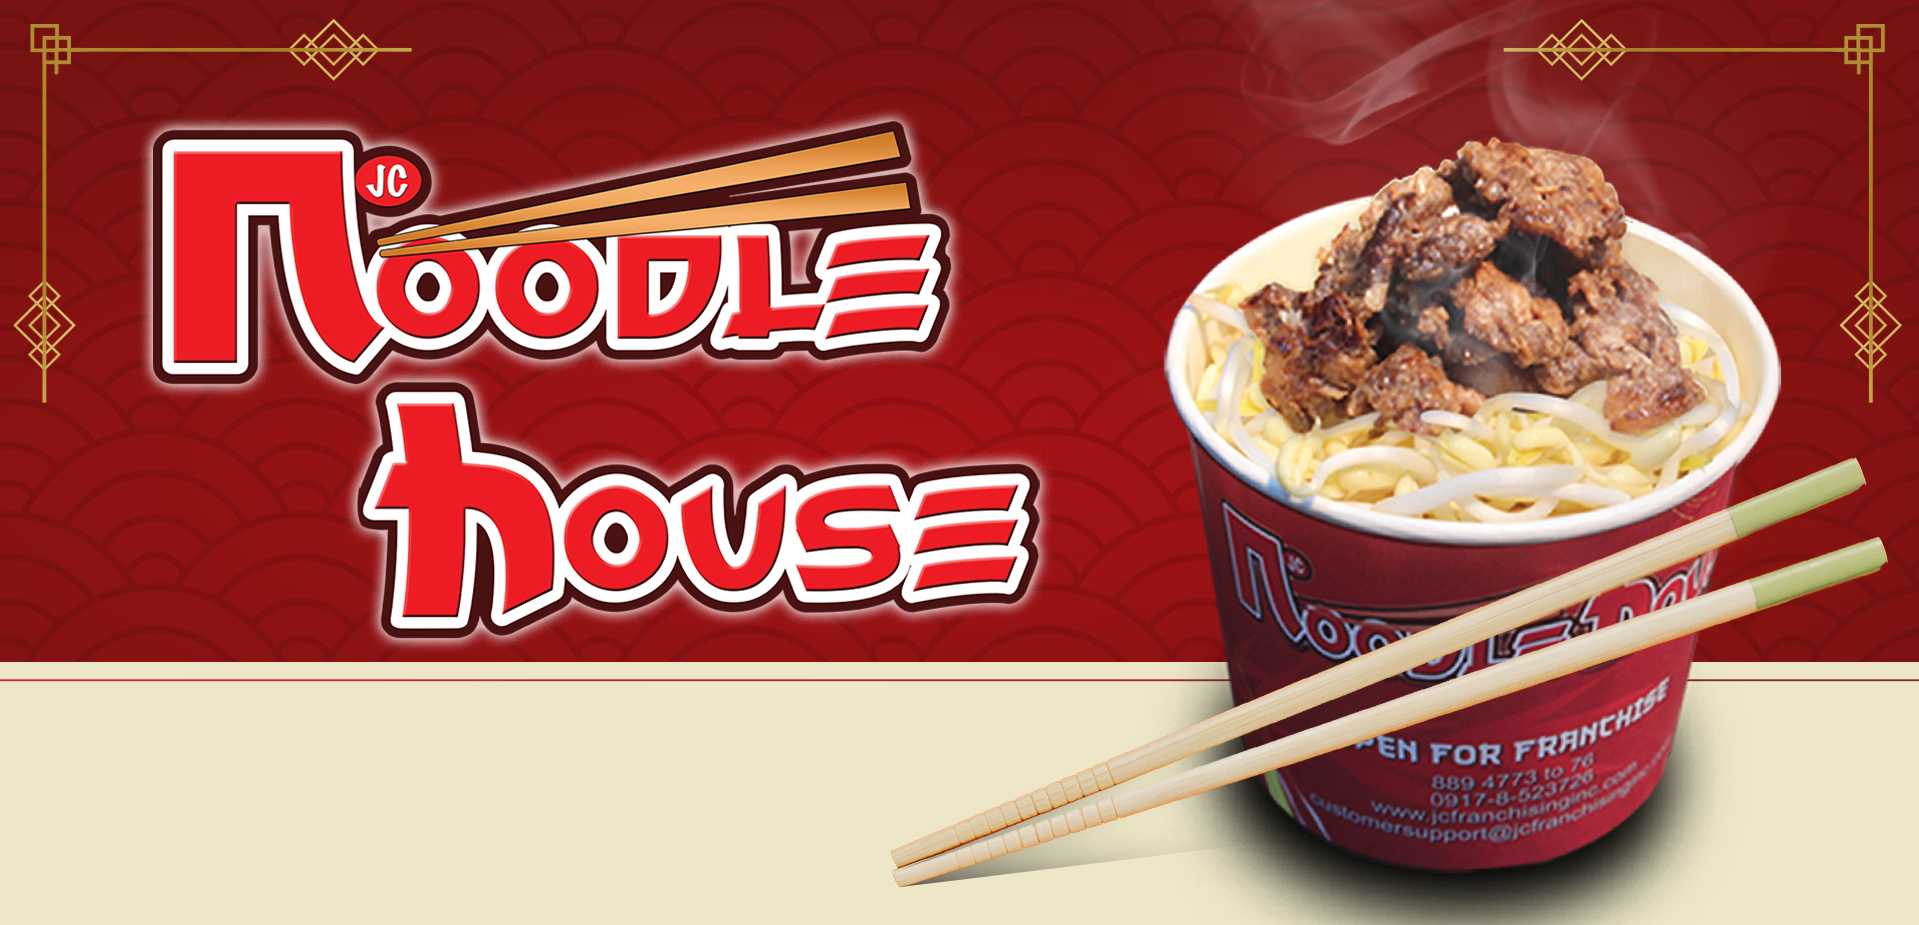 noodle house